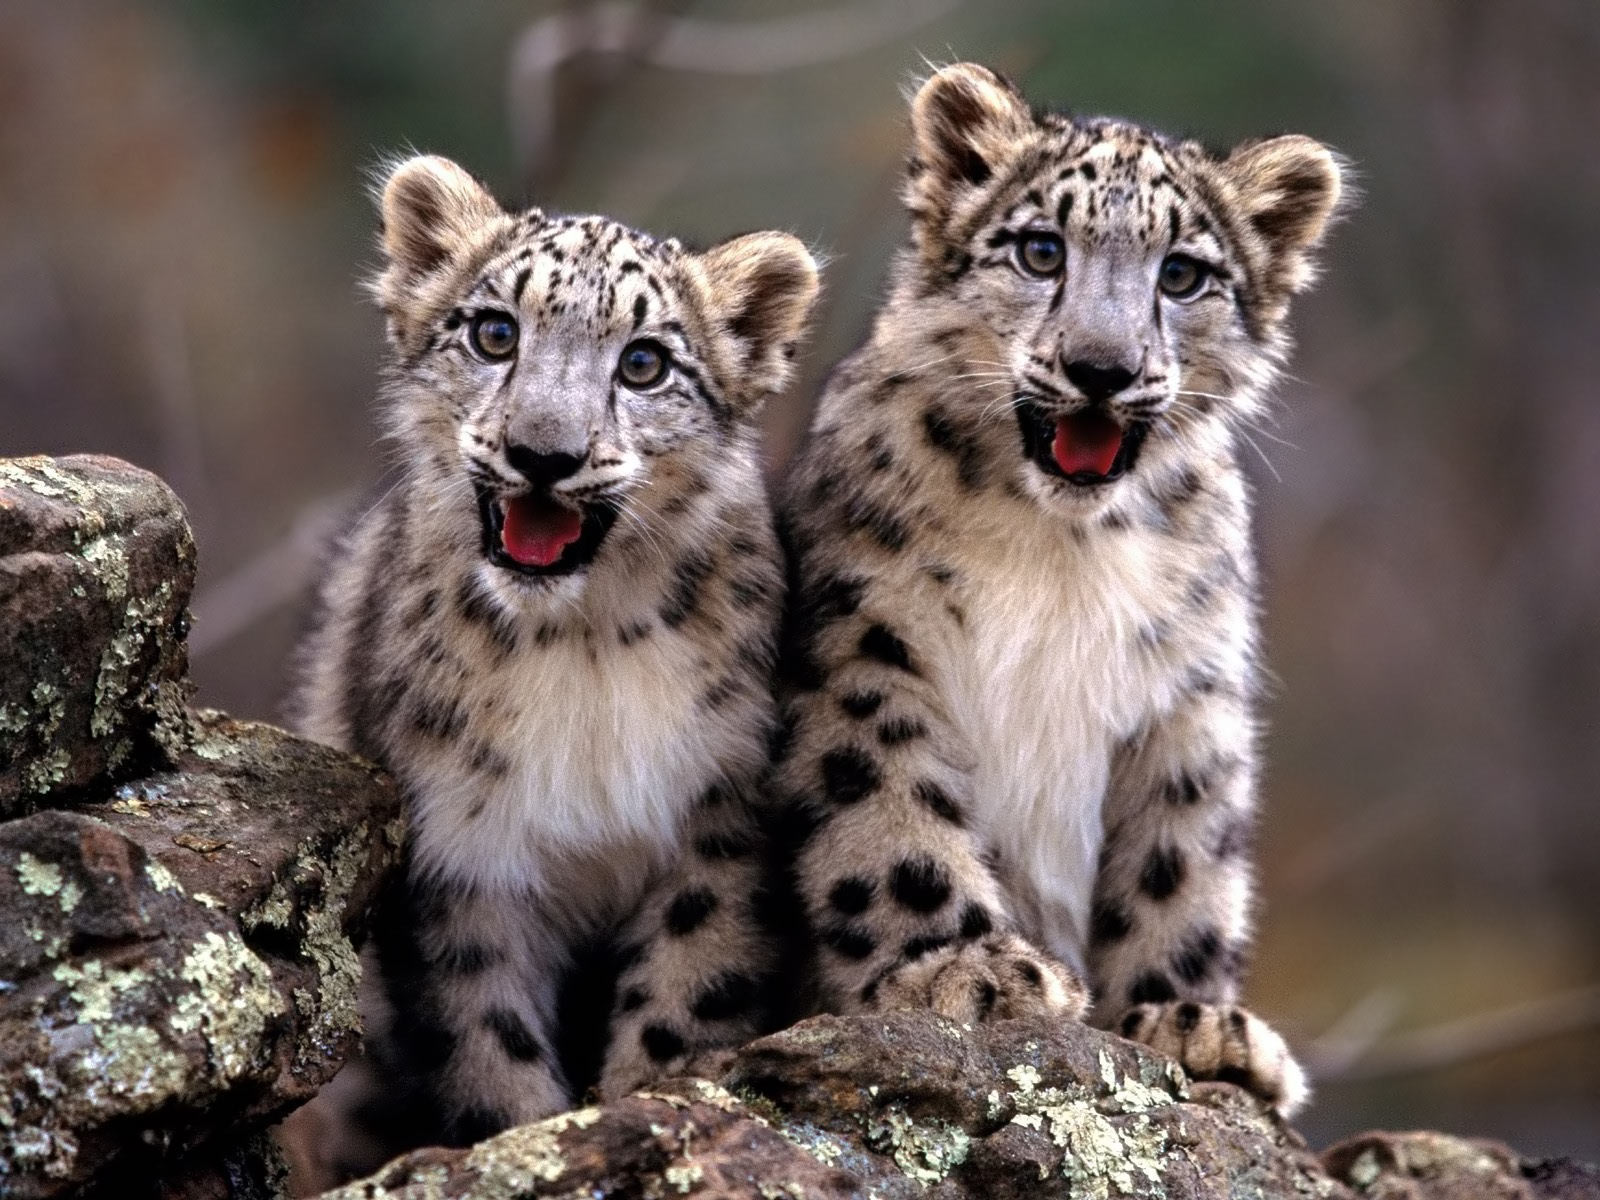 Animal Rights Image Baby Cheetah Wallpaper Photos